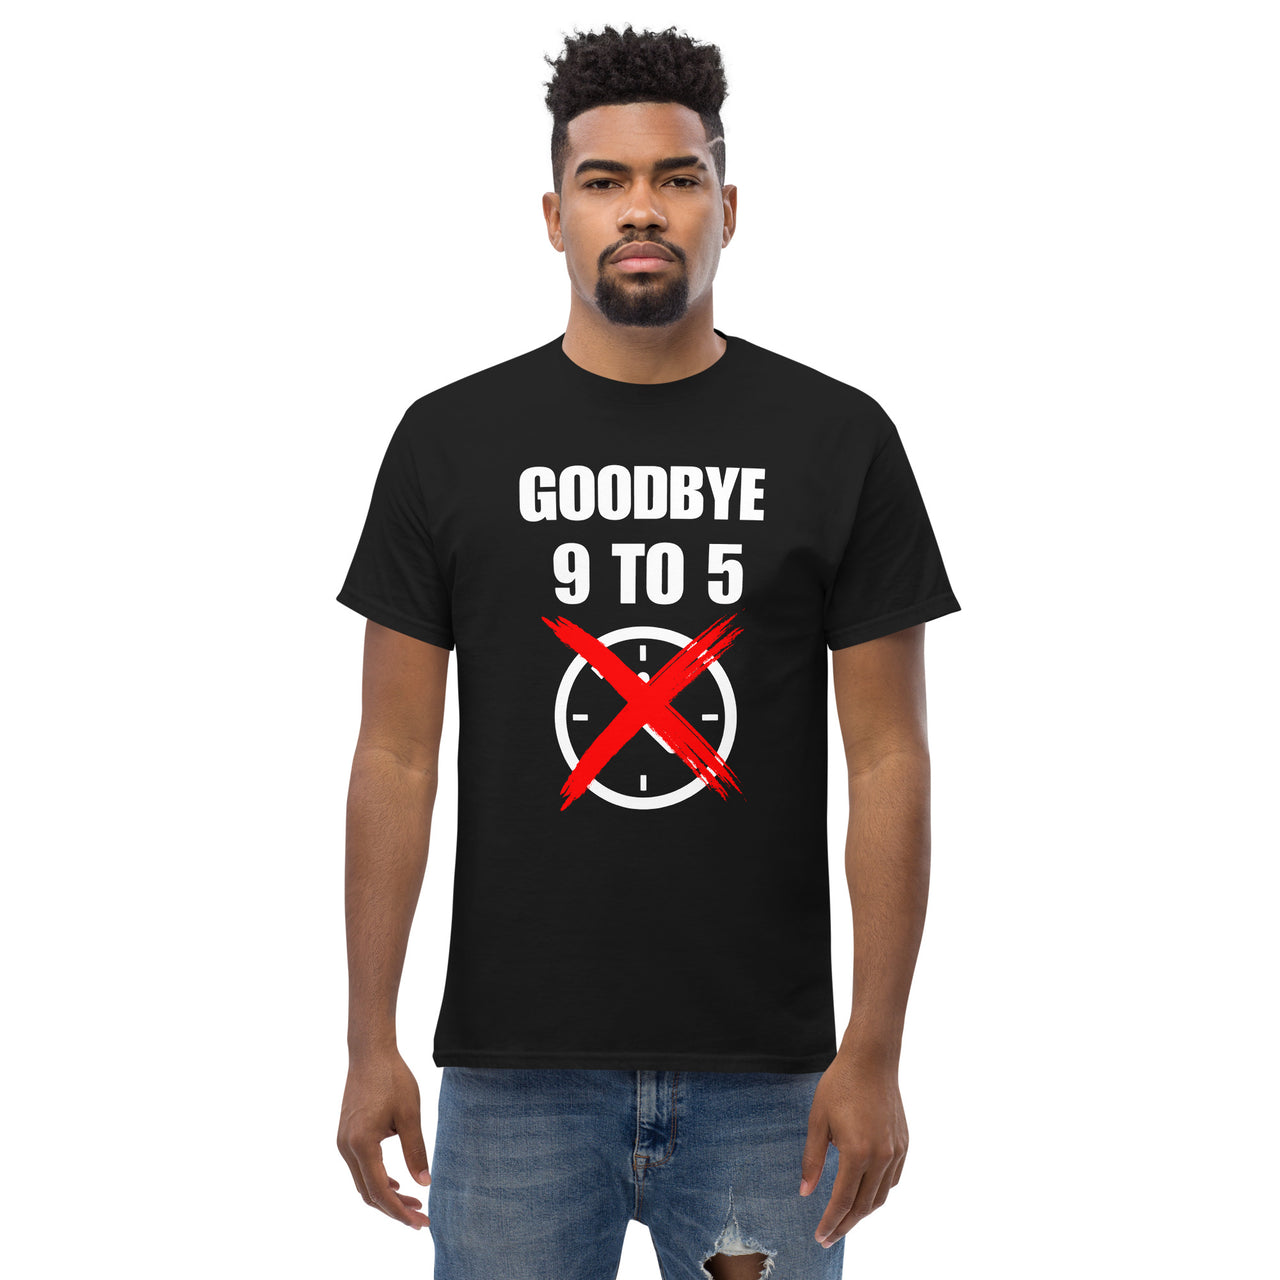 Goodbye 9-5 Entrepreneur-Solopreneur-Business Owner T-shirt